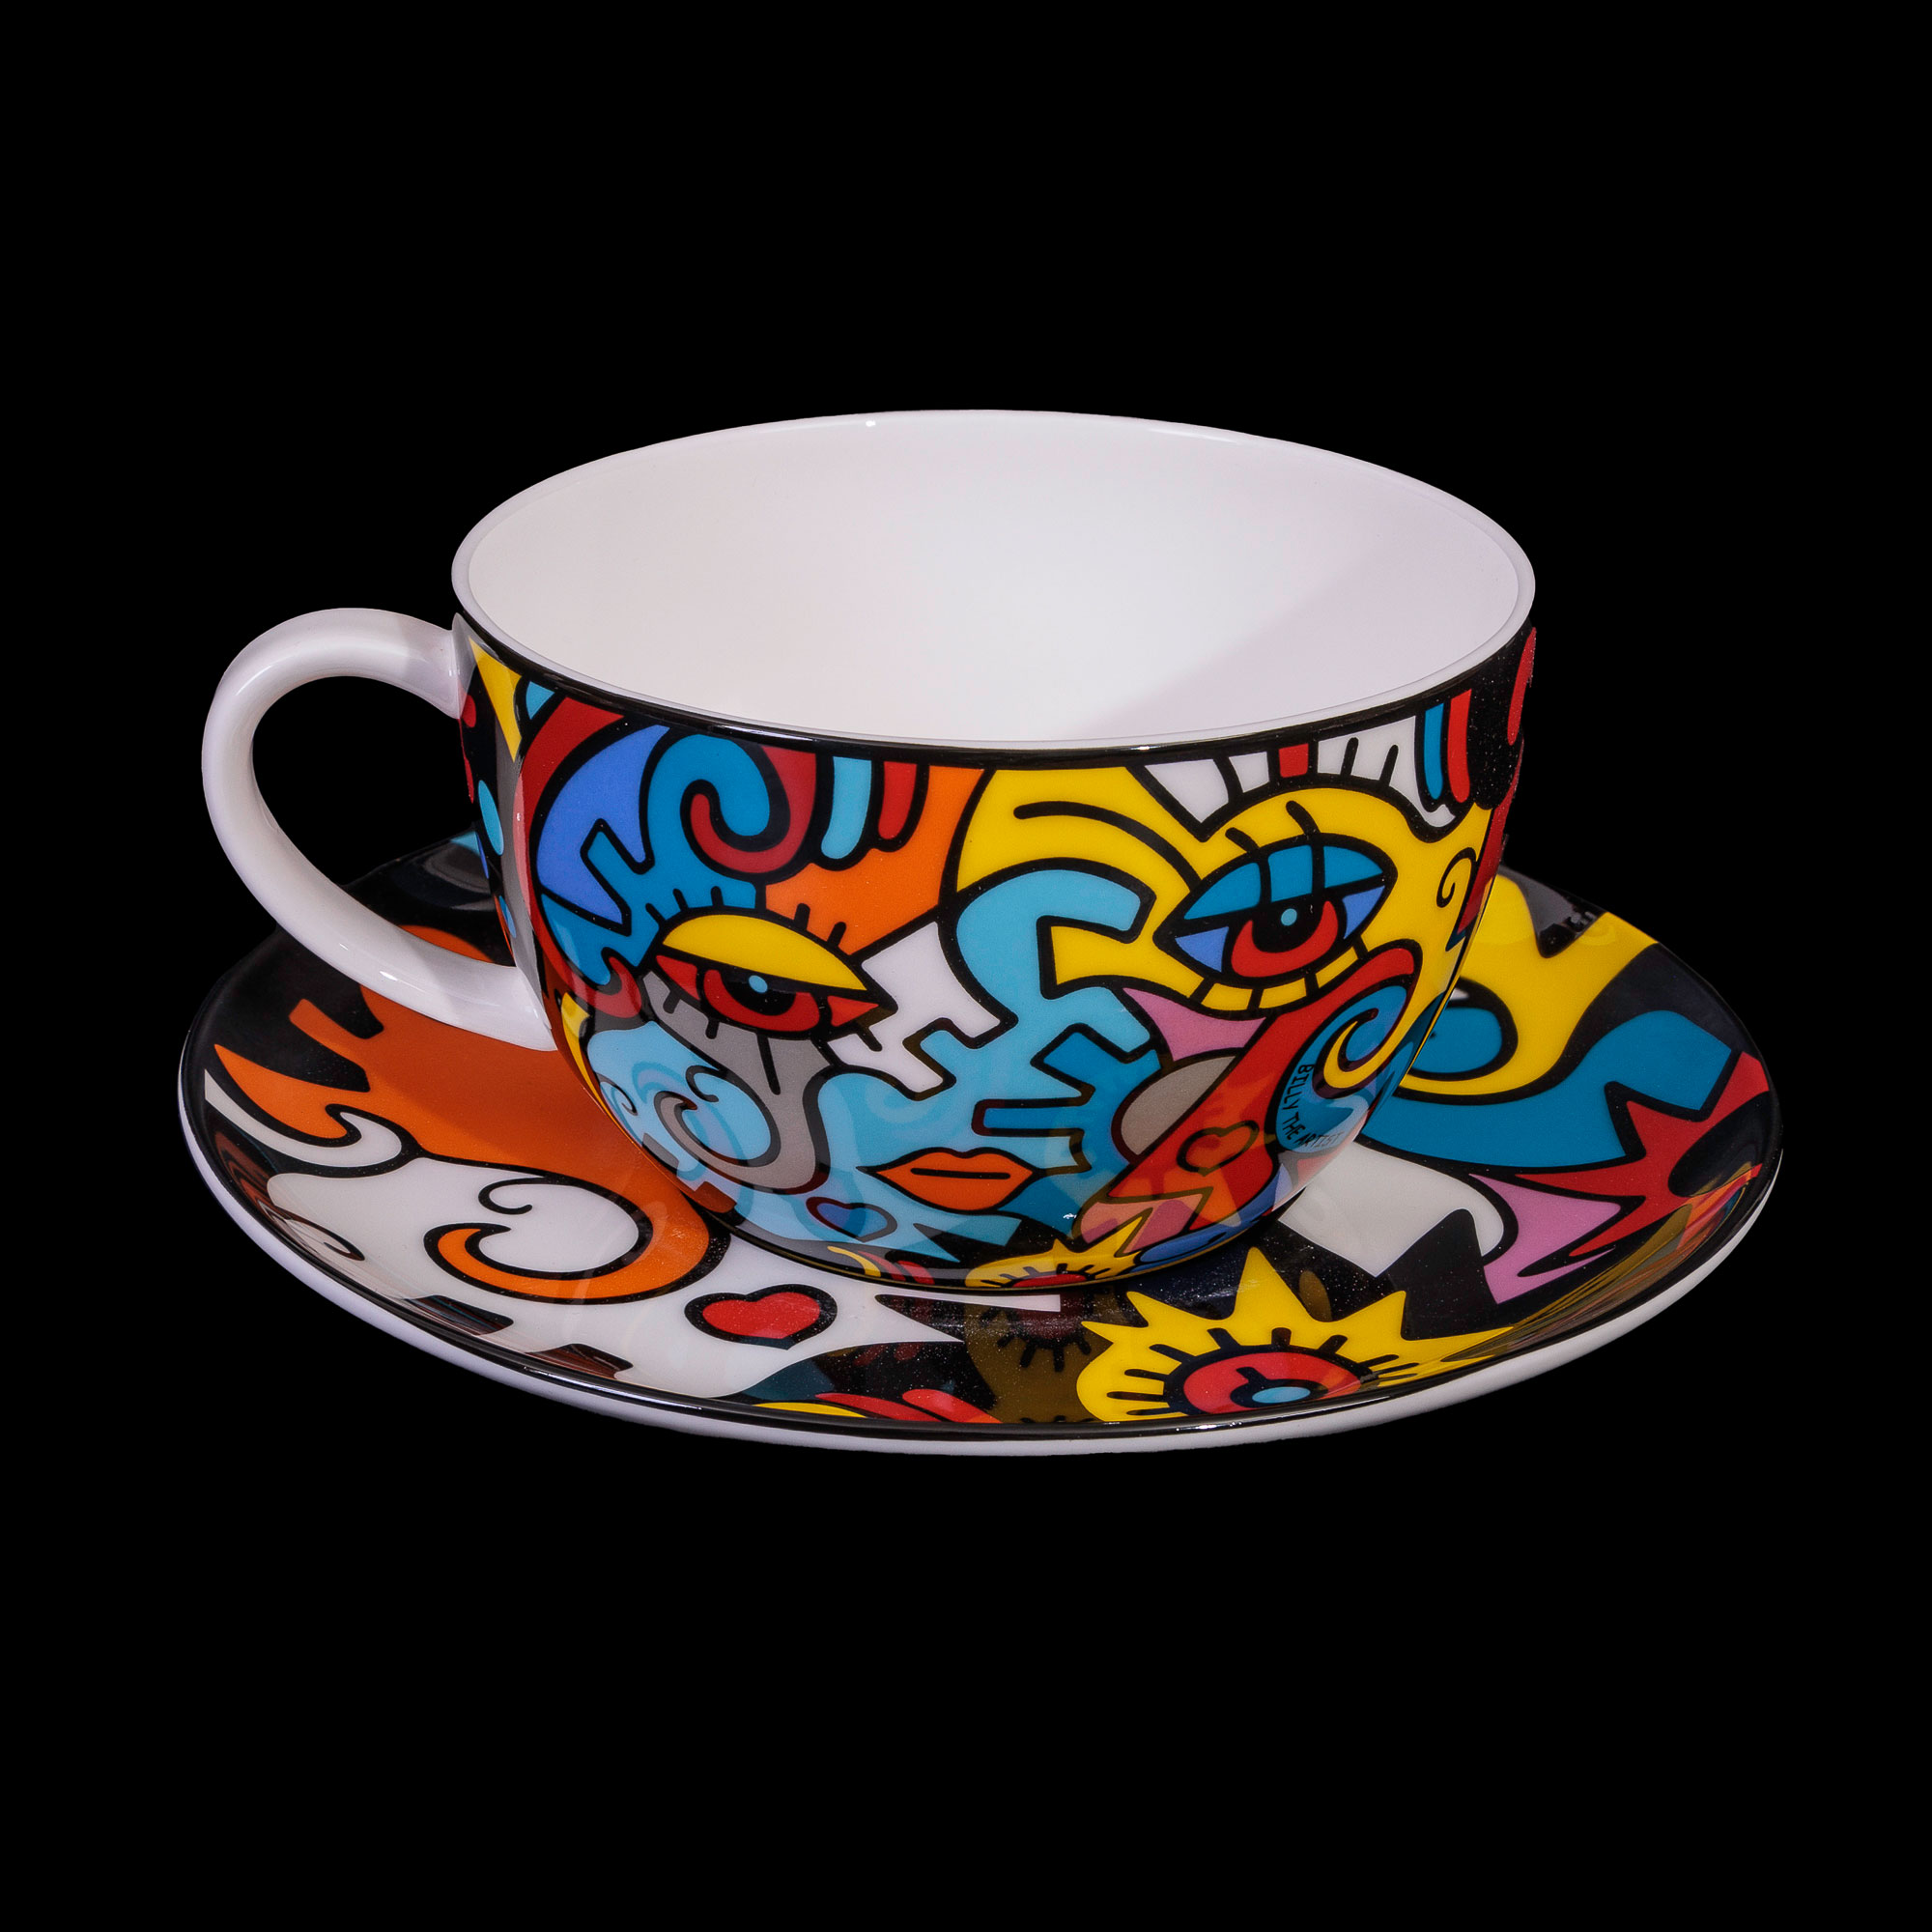 Billy the teacup big Together (Goebel) and Artist : saucer